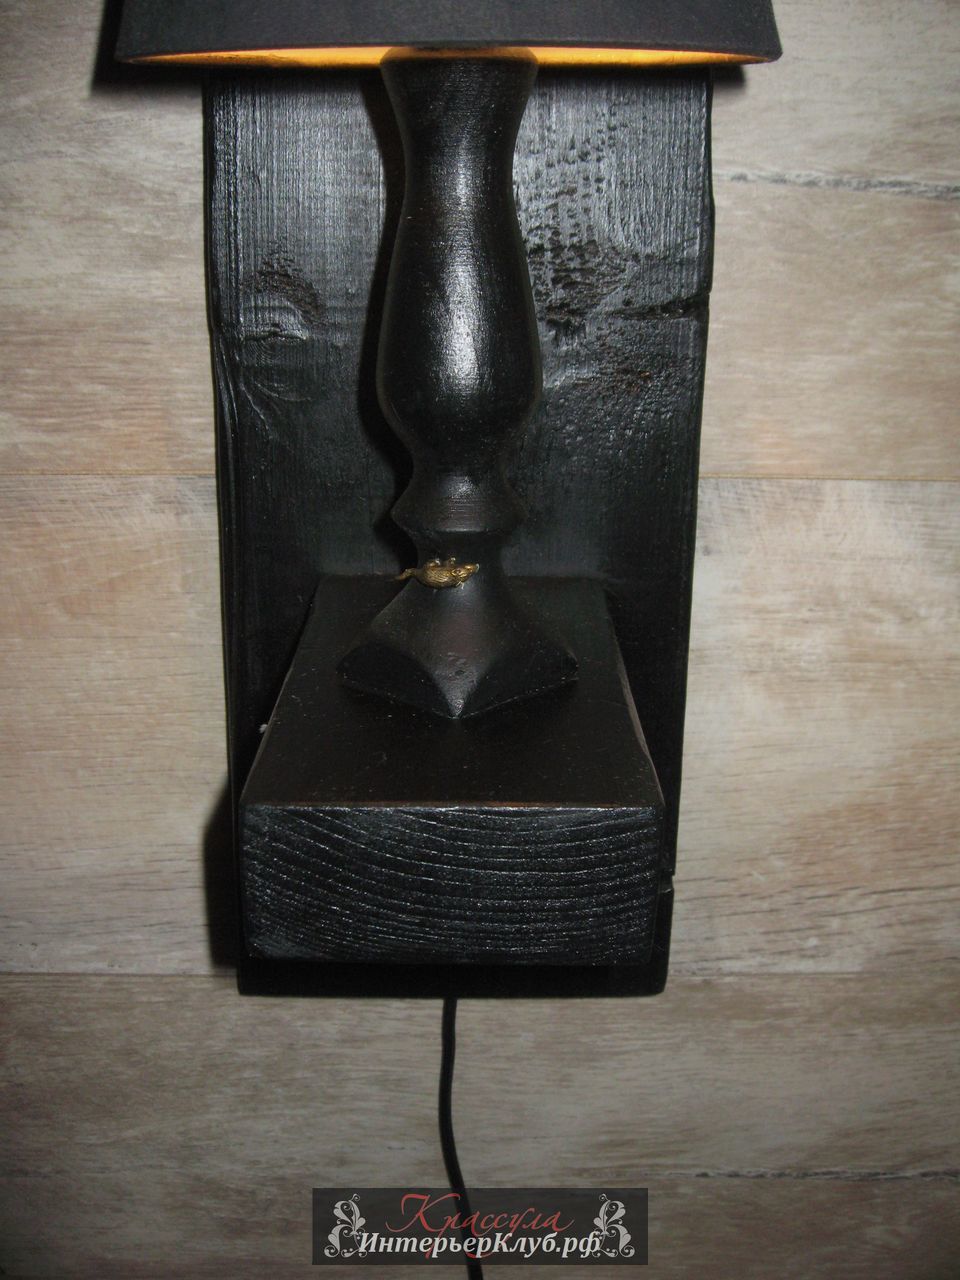 104 Светильник Око - амбарная доска, с элементами декора, цвет черный - золото. Эксклюзивные светильники ручной работы